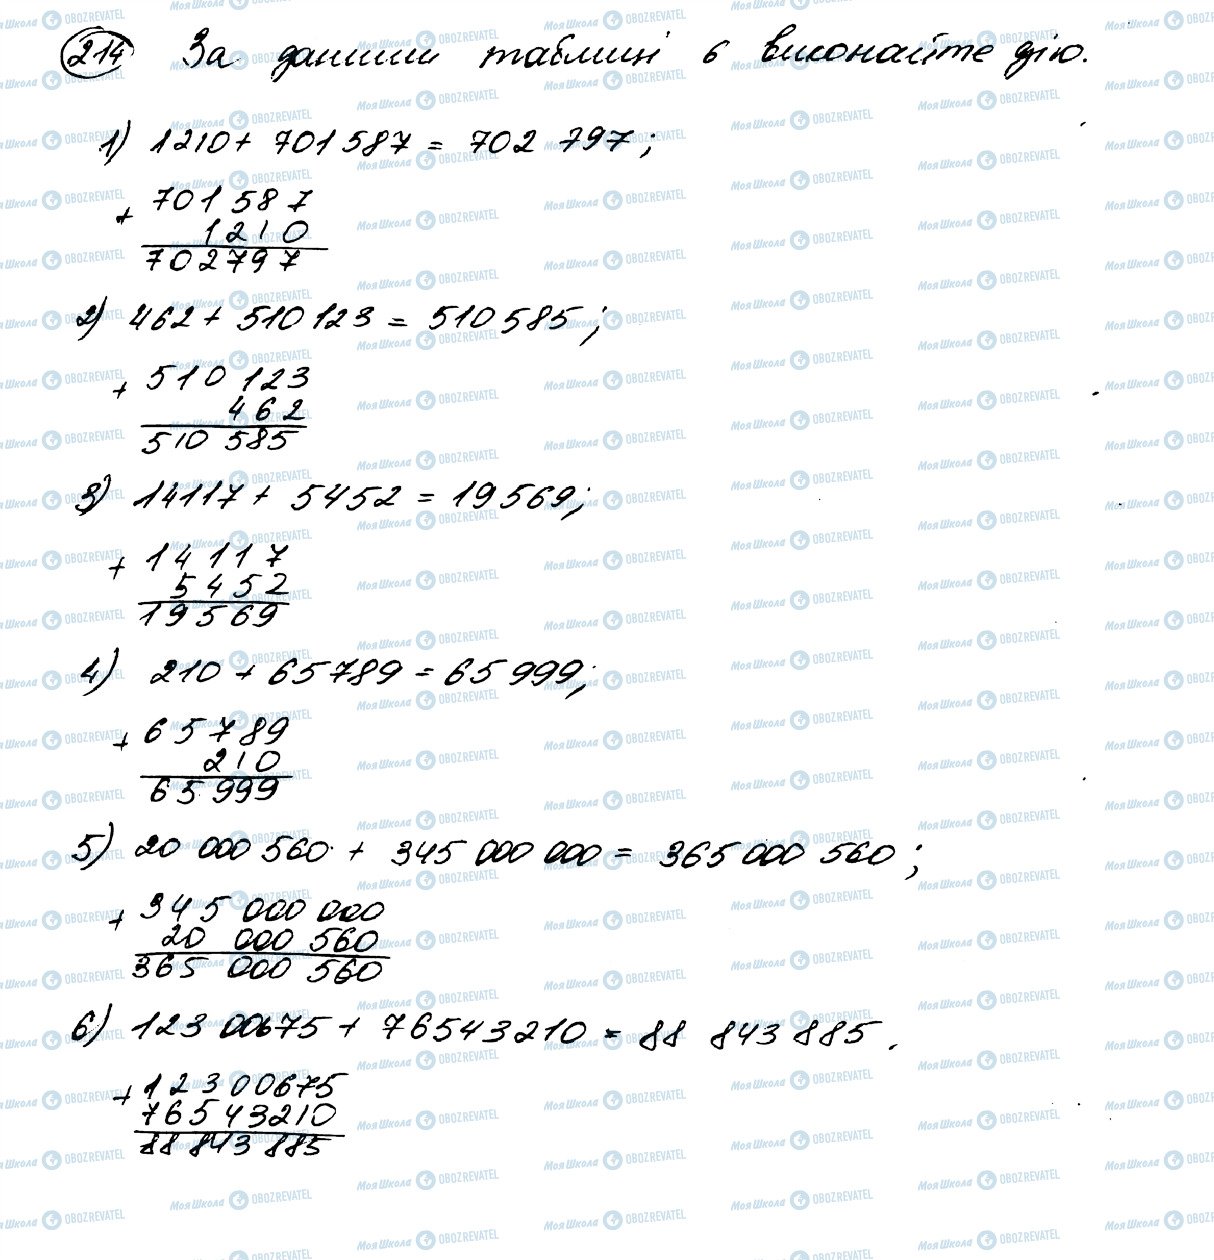 ГДЗ Математика 5 класс страница 214